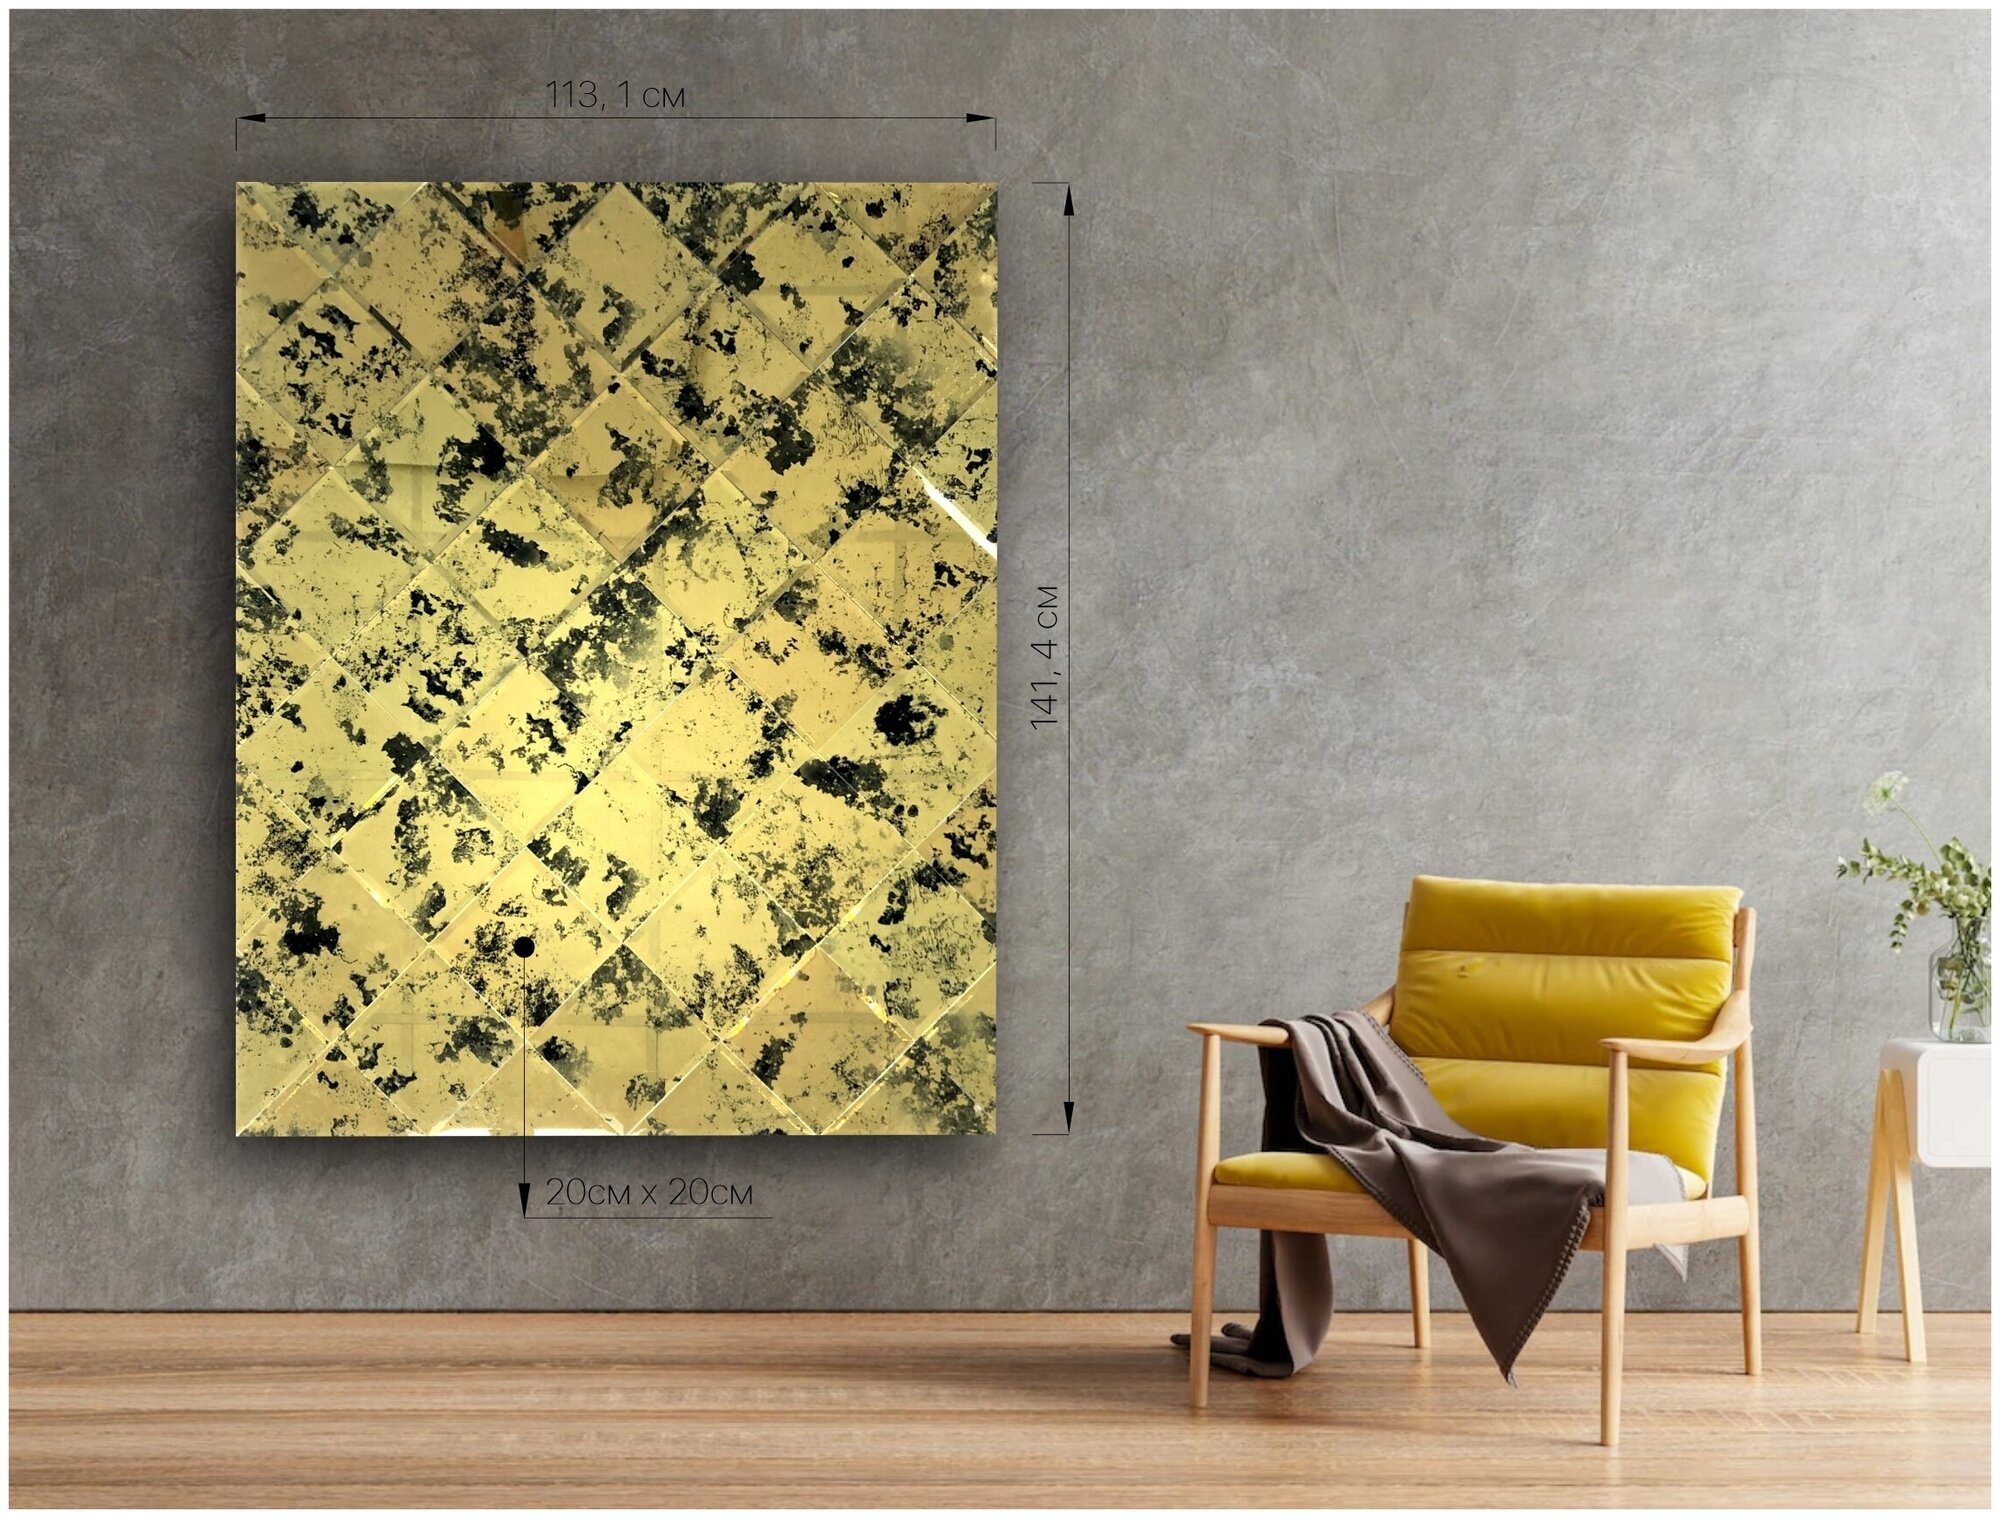 Зеркальная плитка ДСТ, панно на стену Античность 113.1х141.4 см, квадрат 20х20 см, цвет золото.